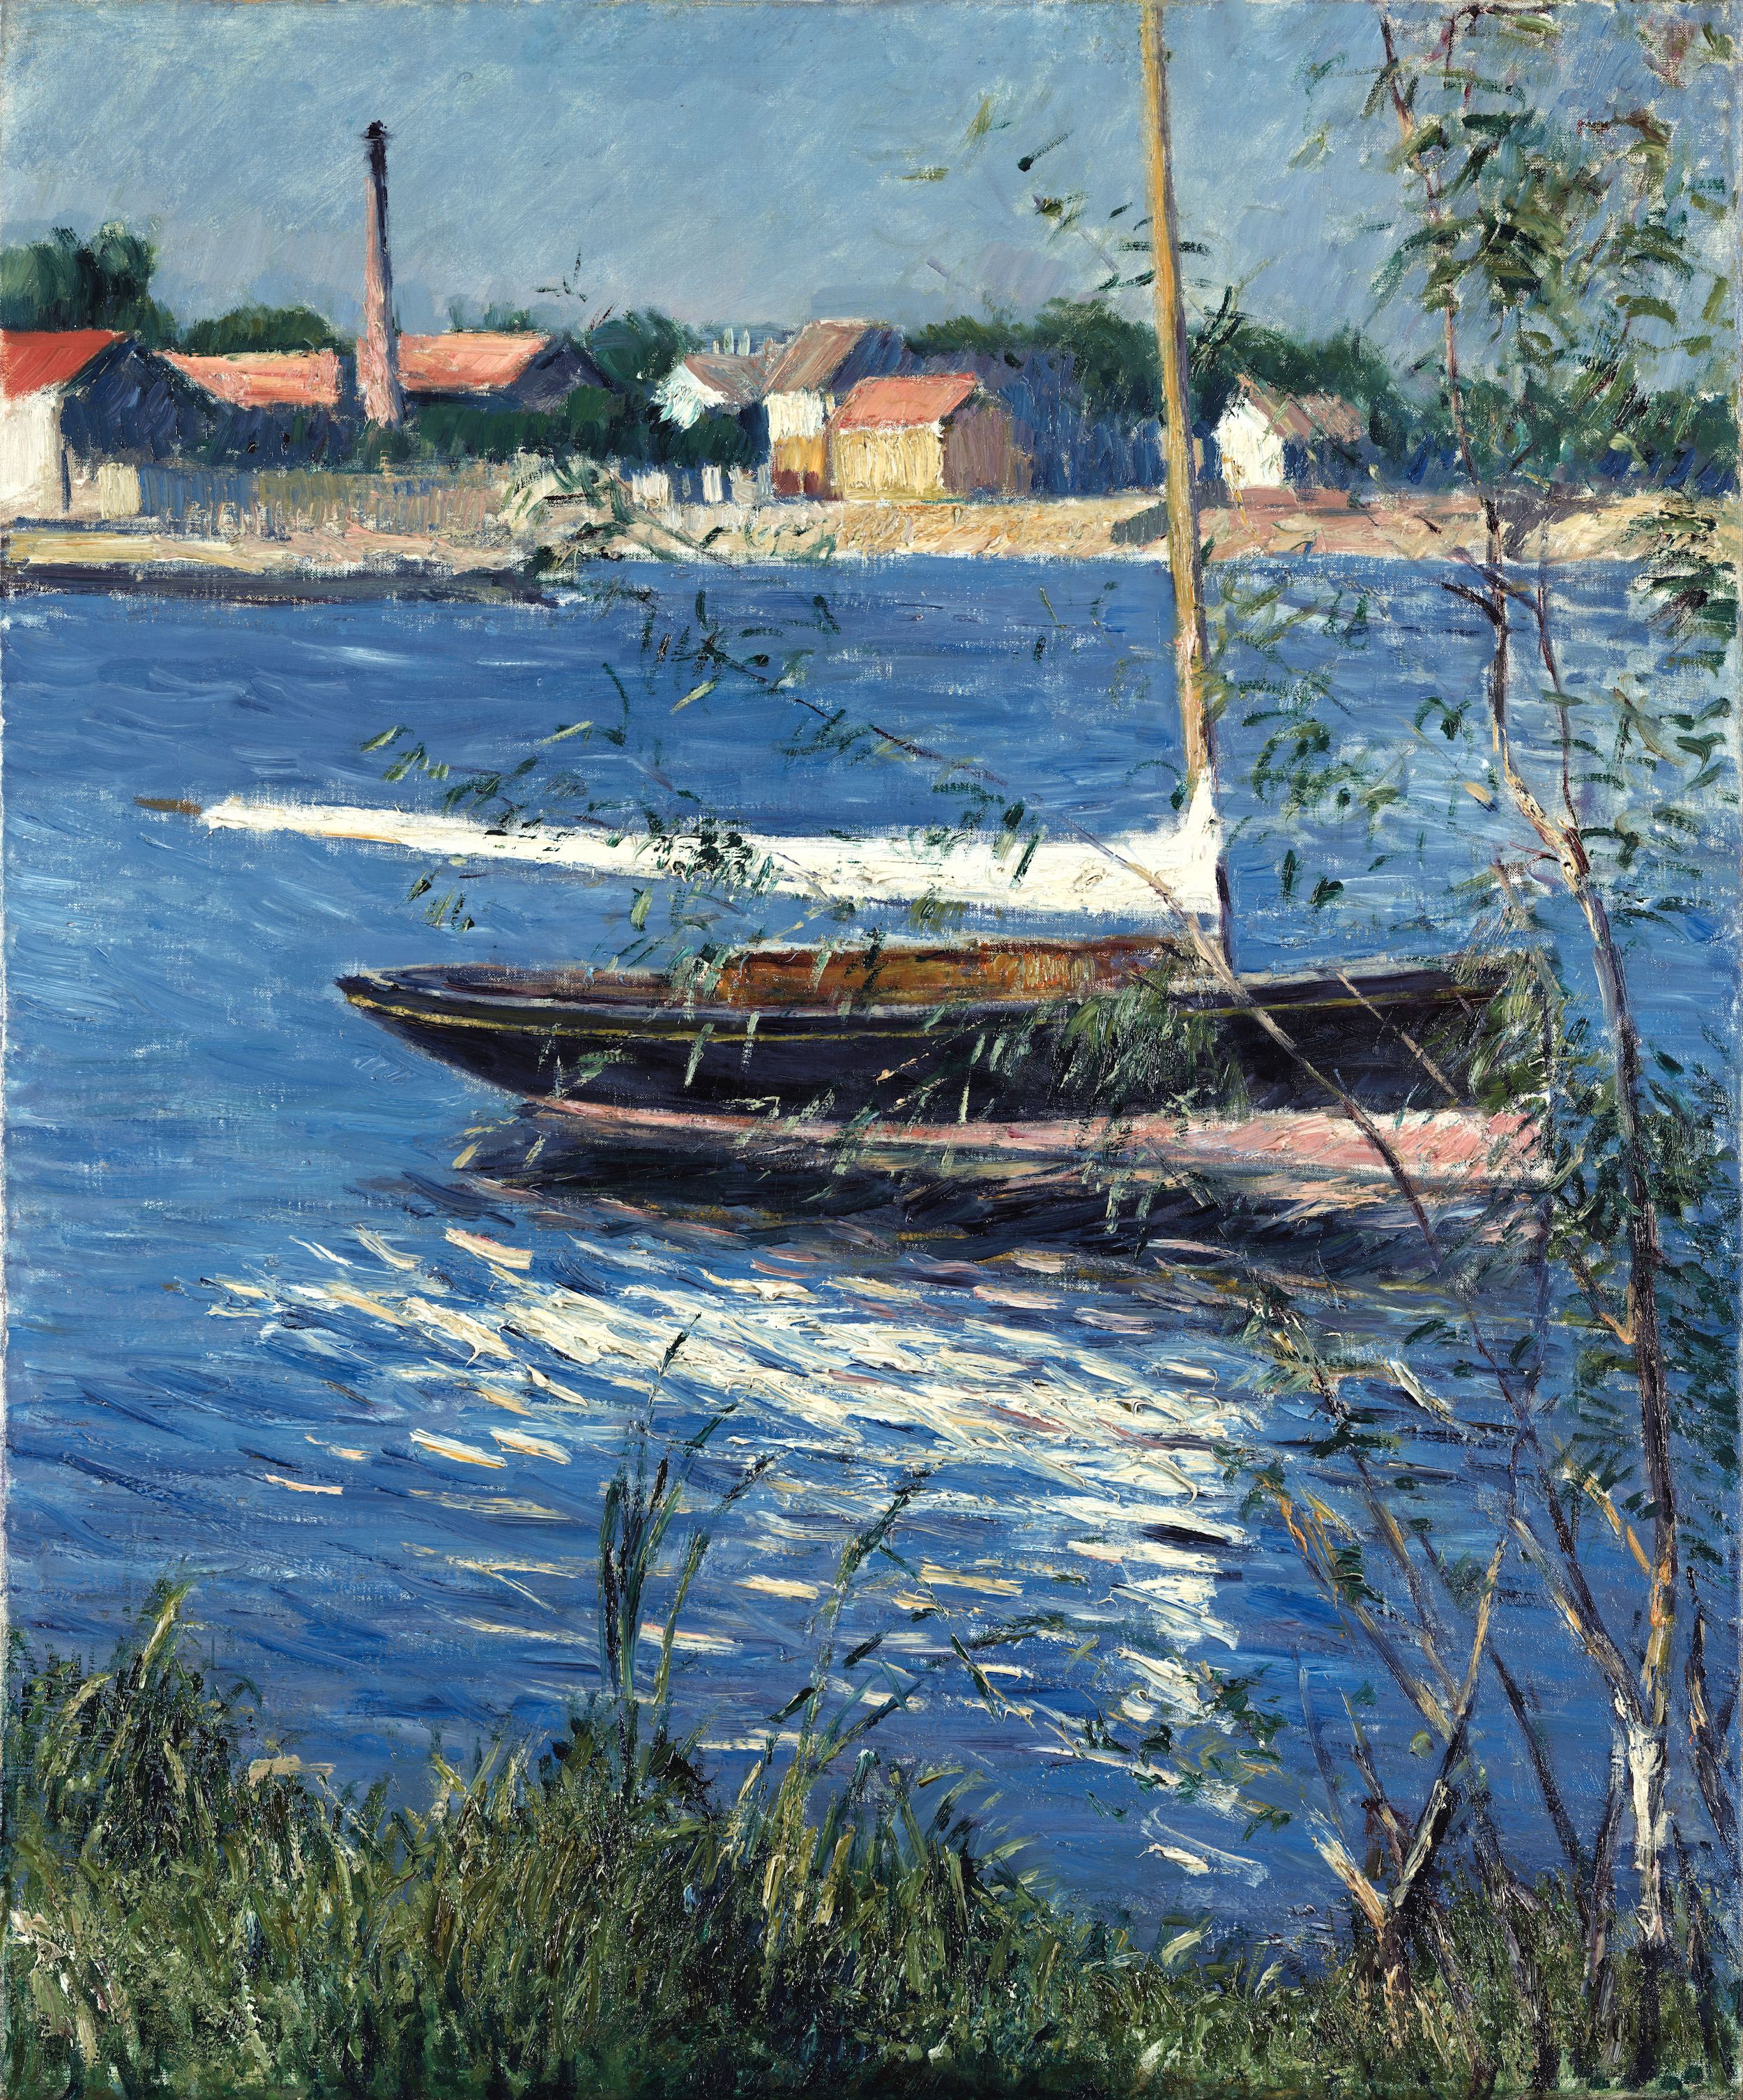 亞嘉杜塞納河上的泊船 by 古斯塔夫 卡耶博特 - c. 1884 - 65.41 x 54.29 cm (unframed) 